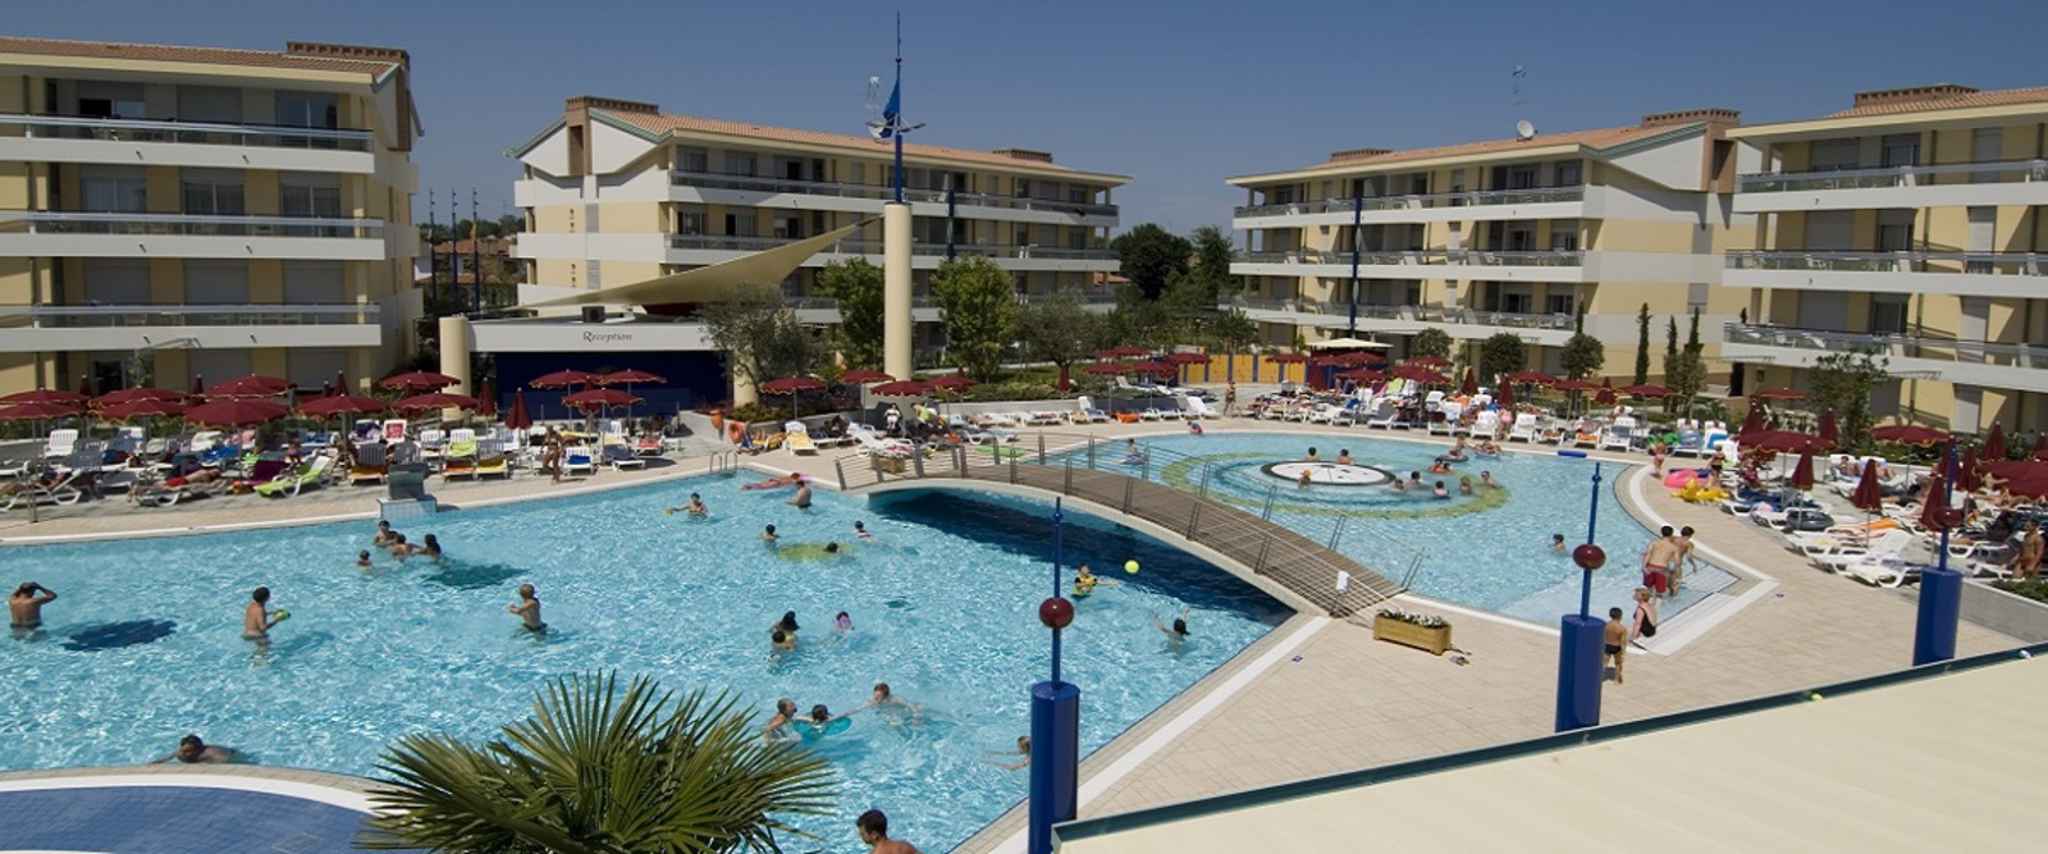 Hotelapartment mit Pool  in Italien